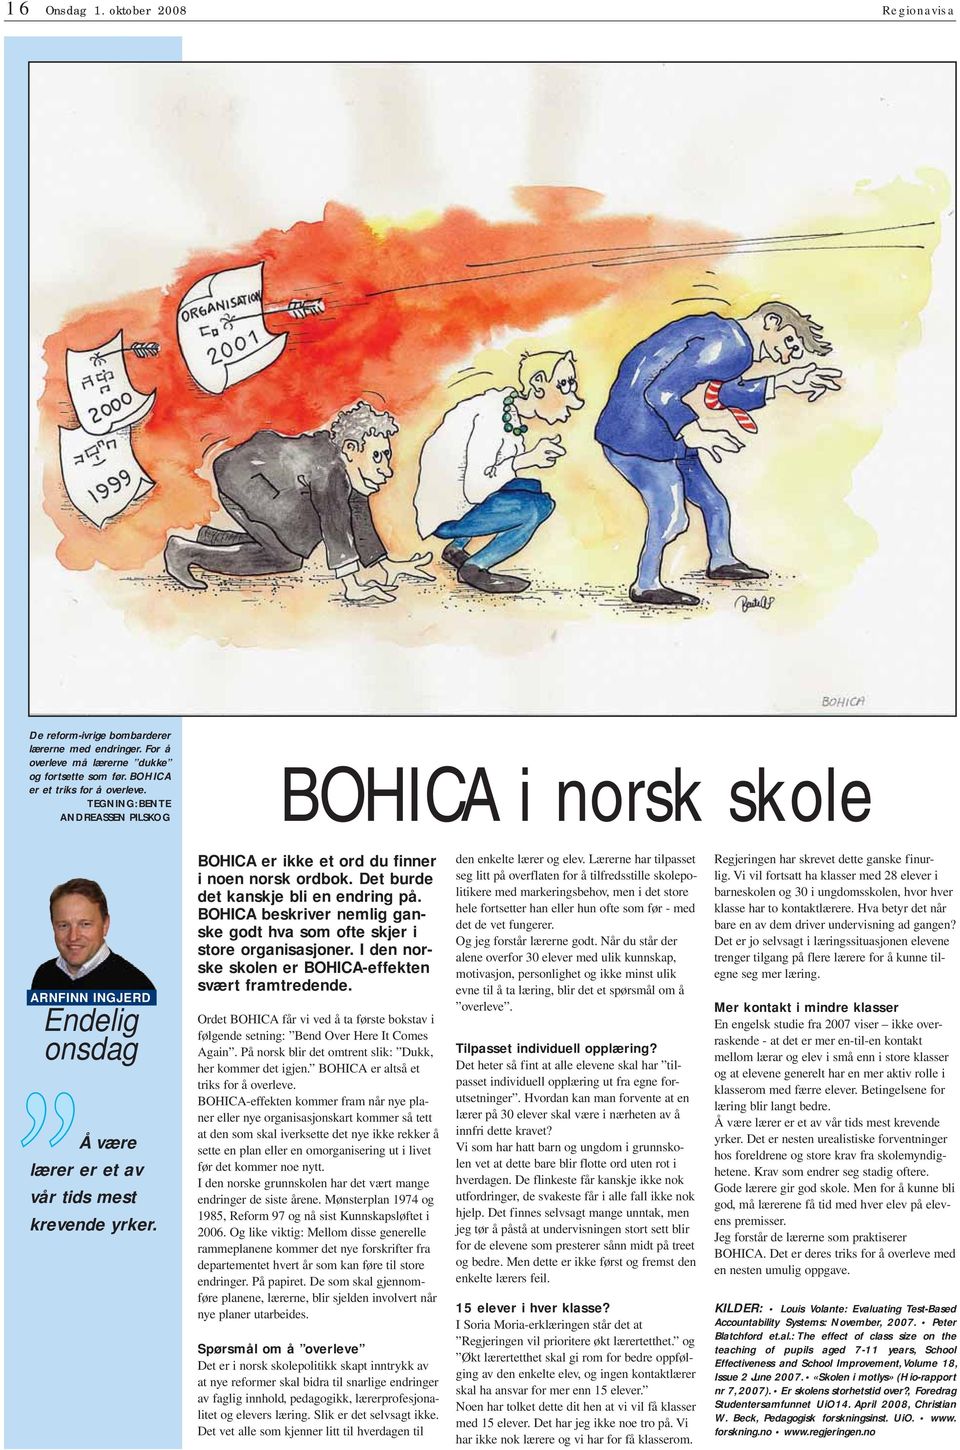 Det burde det kanskje bli en endring på. BOHICA beskriver nemlig ganske godt hva som ofte skjer i store organisasjoner. I den norske skolen er BOHICA-effekten svært framtredende.